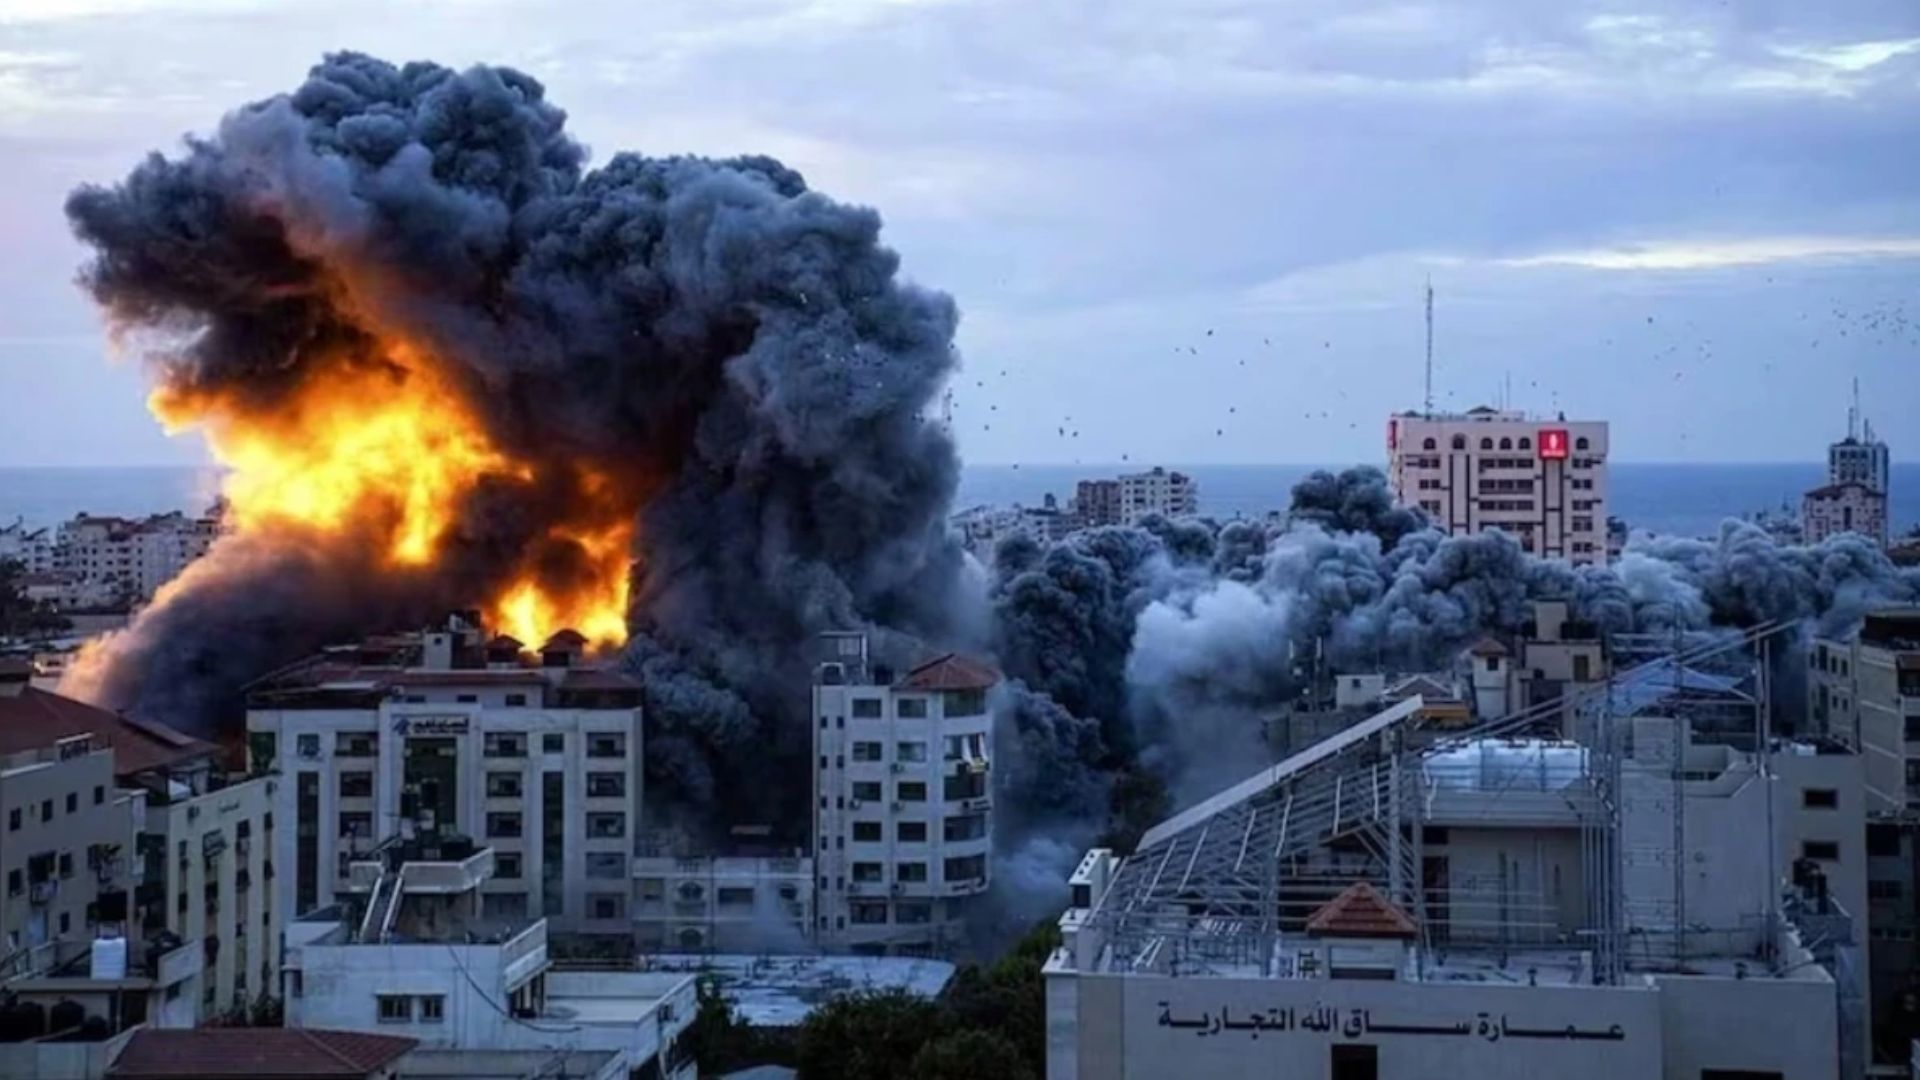 युद्धविराम की समाप्ति के बाद गाजा में इजरायल का बड़ा हवाई हमला, 175 से ज्यादा लोगों की मौत